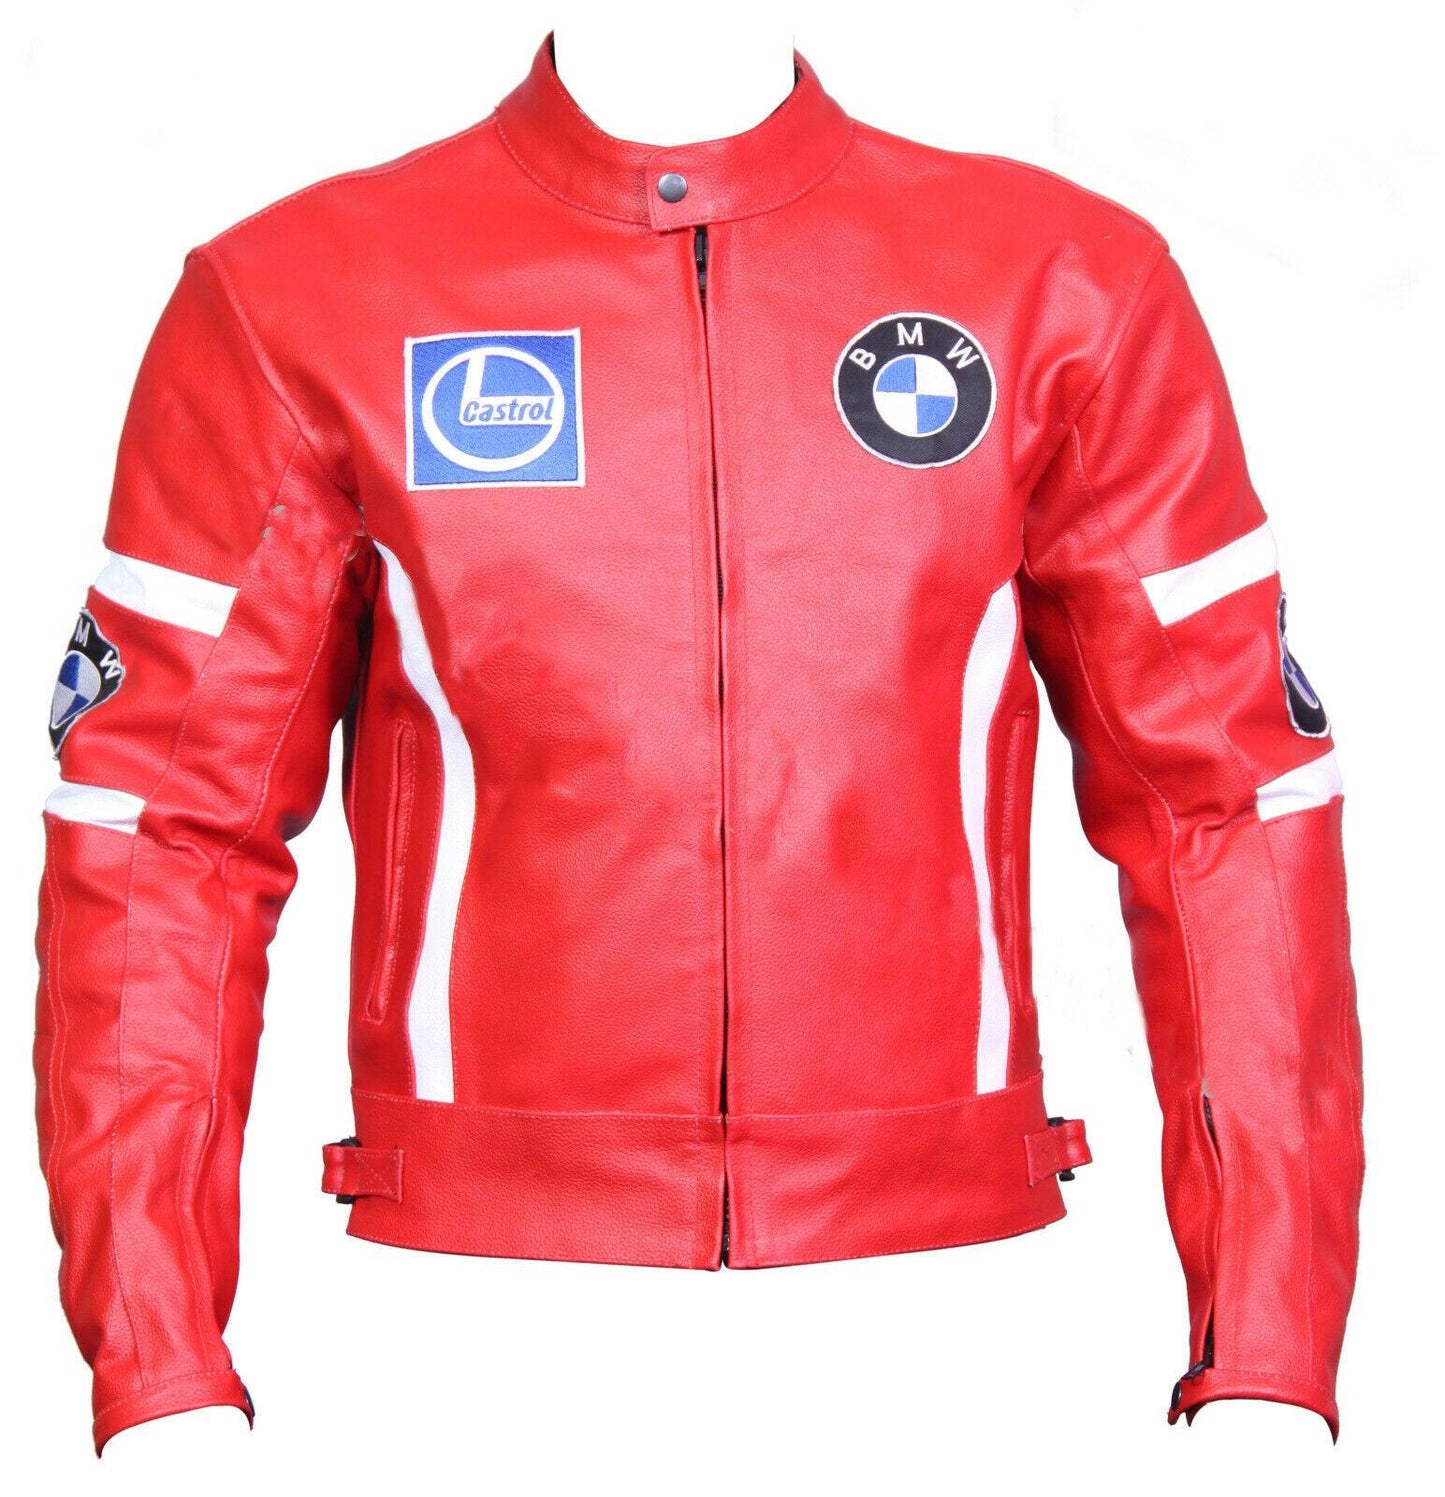 ZMJ-026 Racing Motorbike/Motorcycle Leather Jacket Custom Made Jacket For Bikers - ZEES MOTOR SPORTS